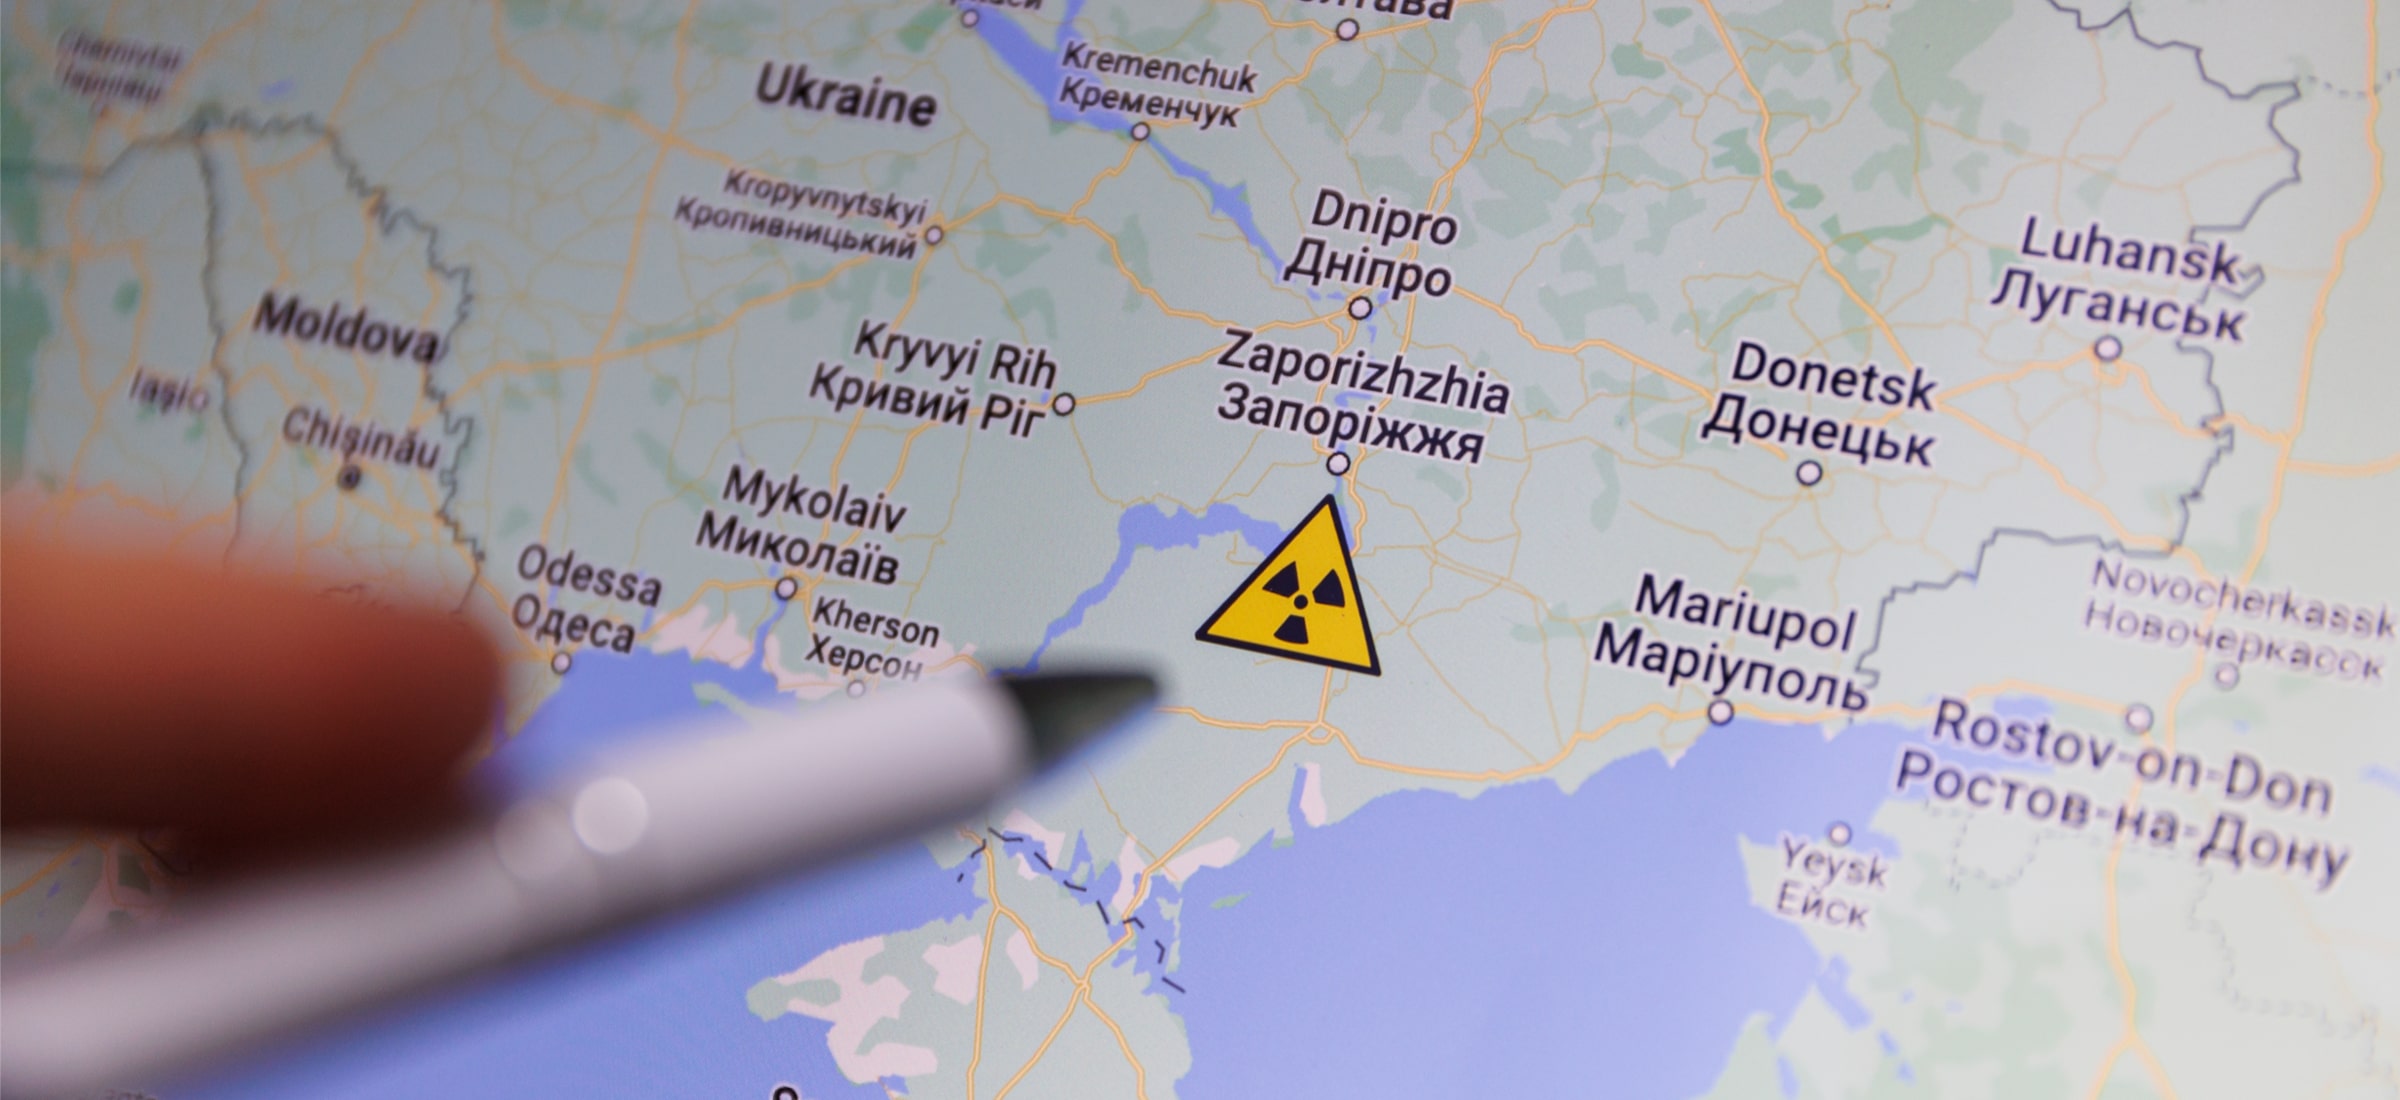 Ukraińcy Pokazali Symulację Chmury Radioaktywnej Europie Grozi Powtórka Z Czarnobyla 0345